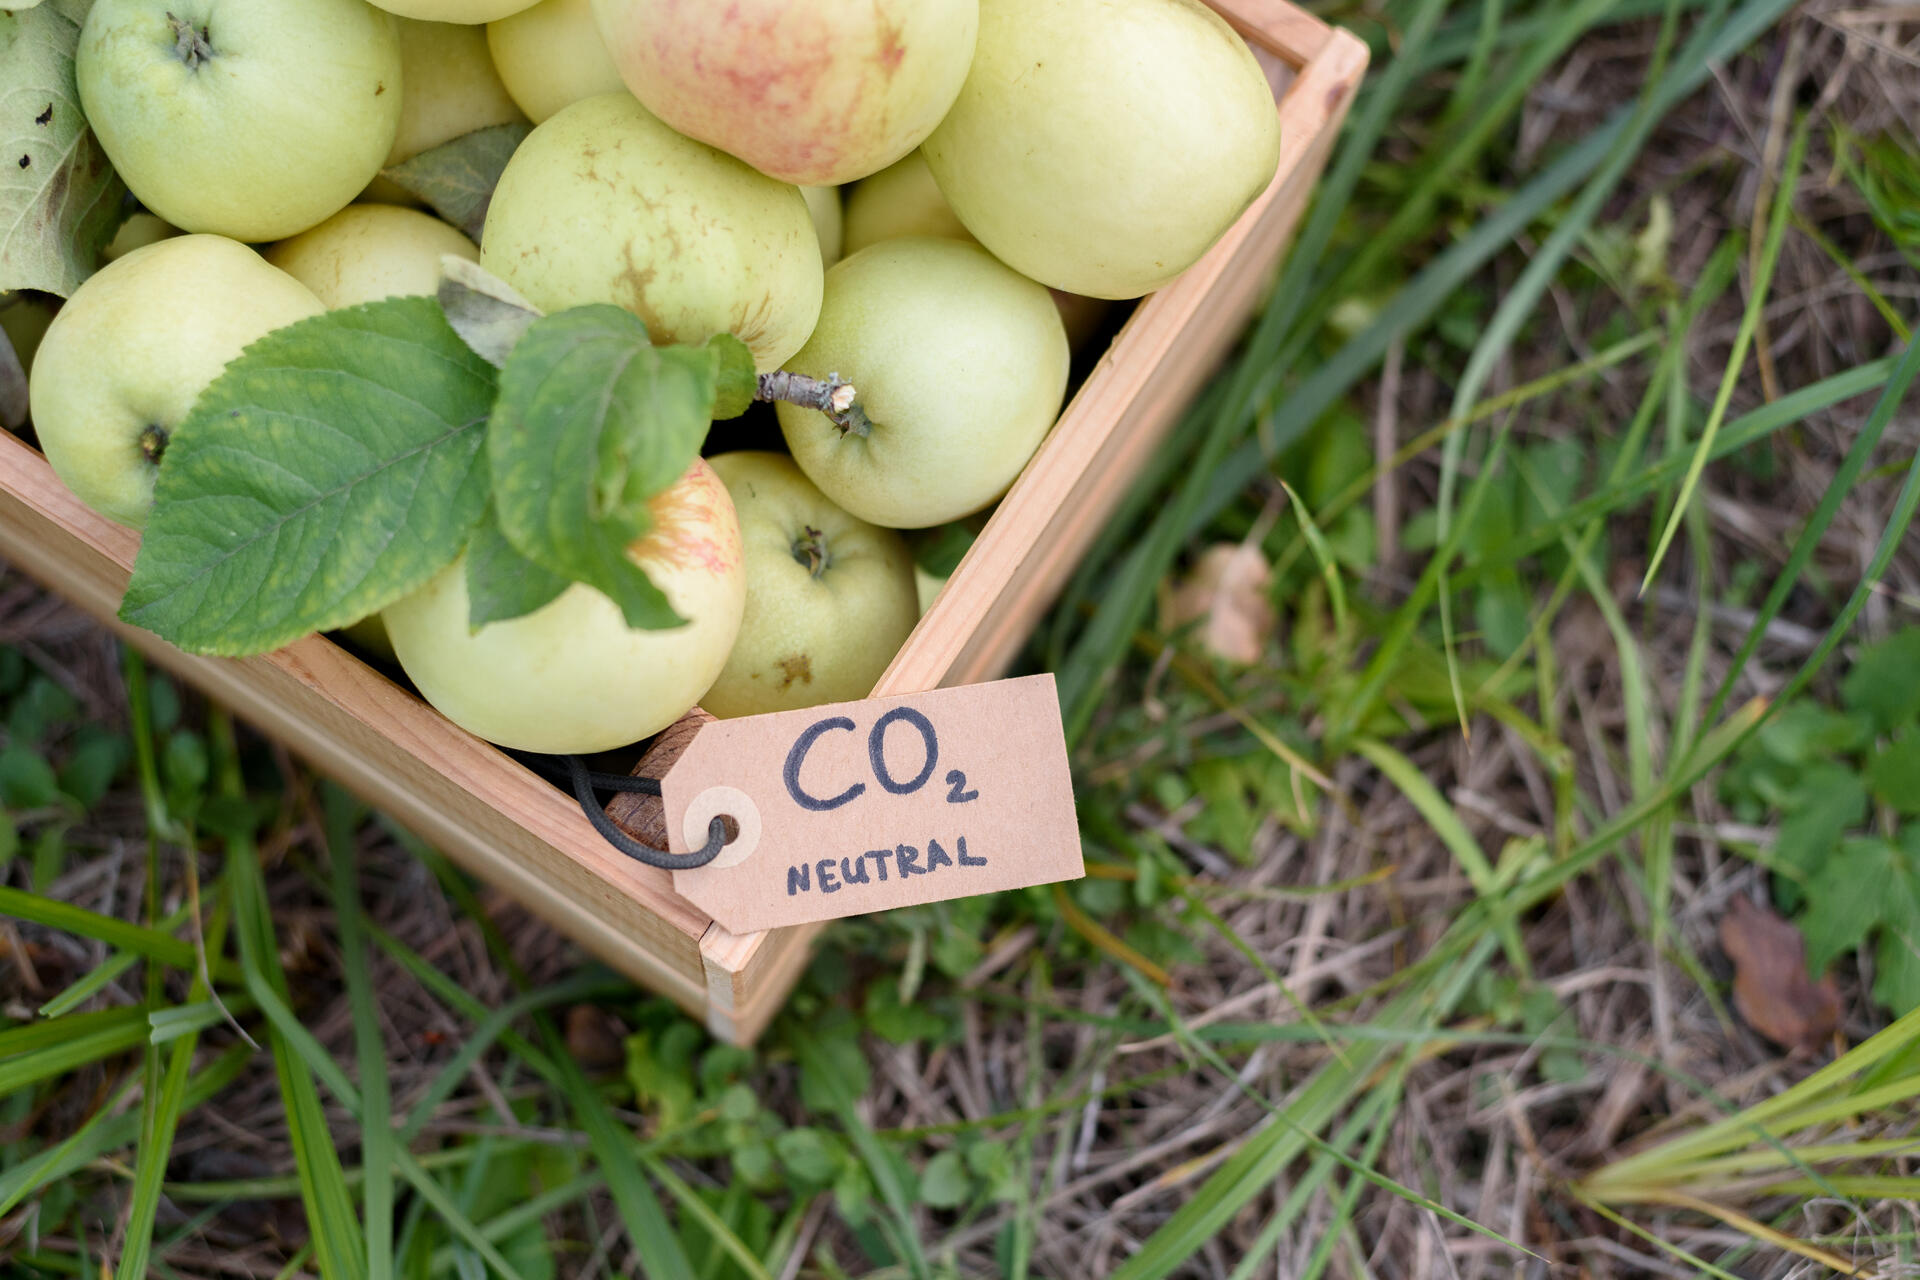 Cattura e stoccaggio del carbonio: mele “a chilometro zero” con un’etichetta di neutralità carbonica